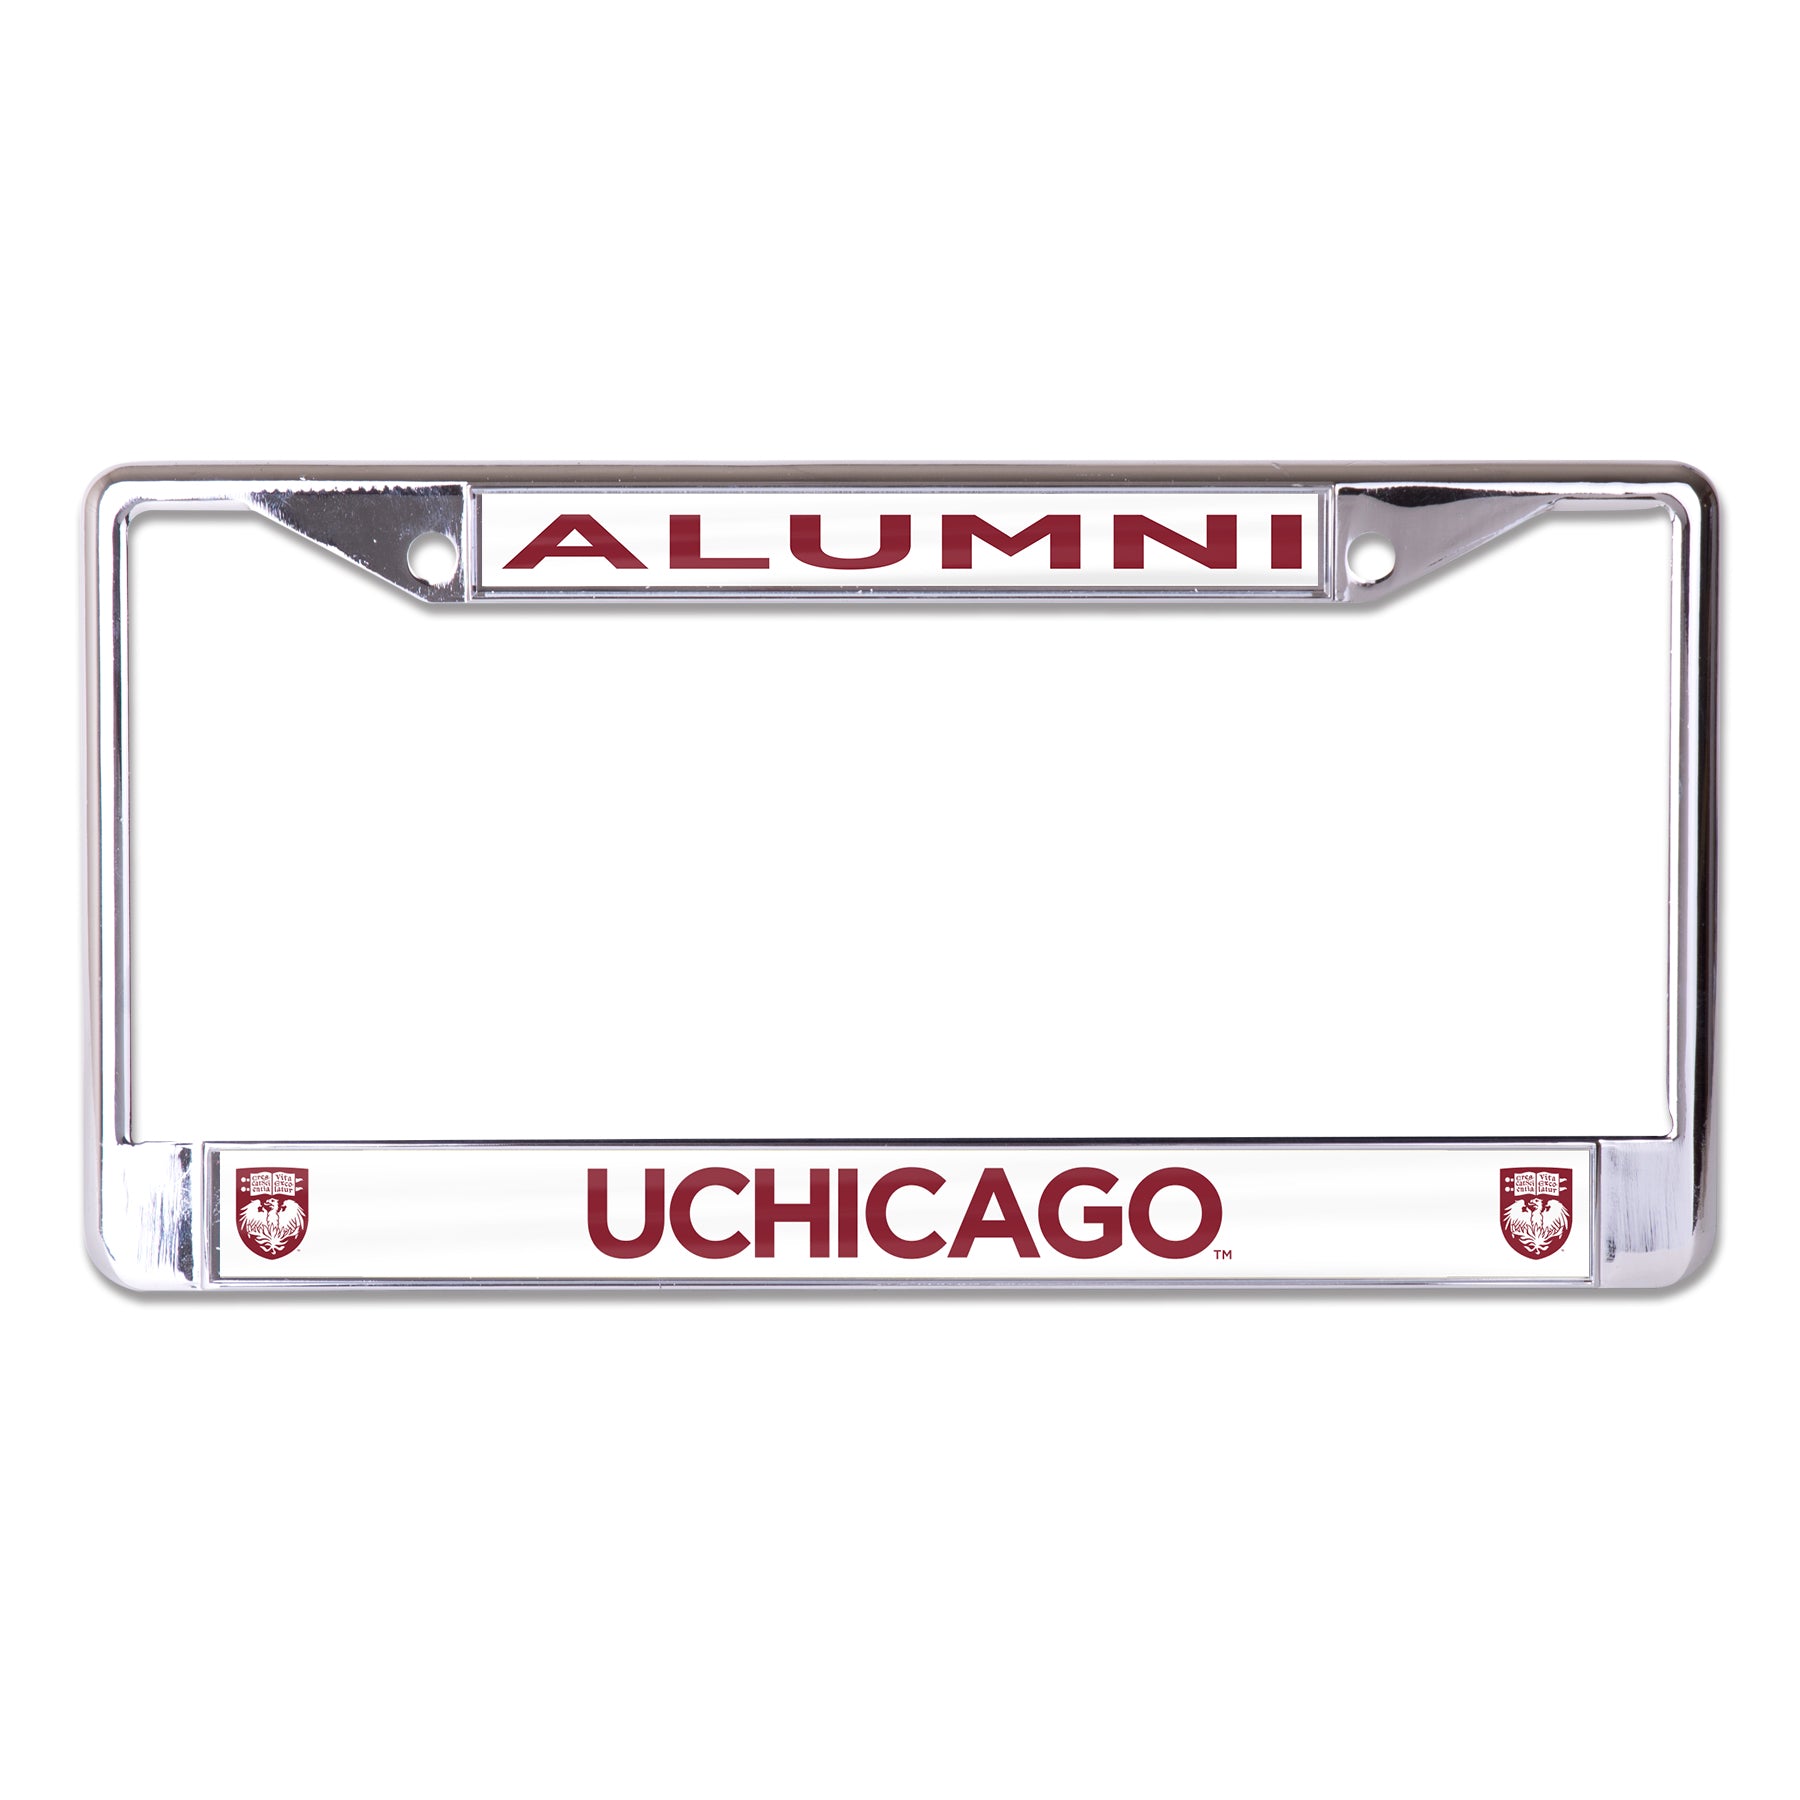 University of Chicago Alumni Chrome License Plate Frame